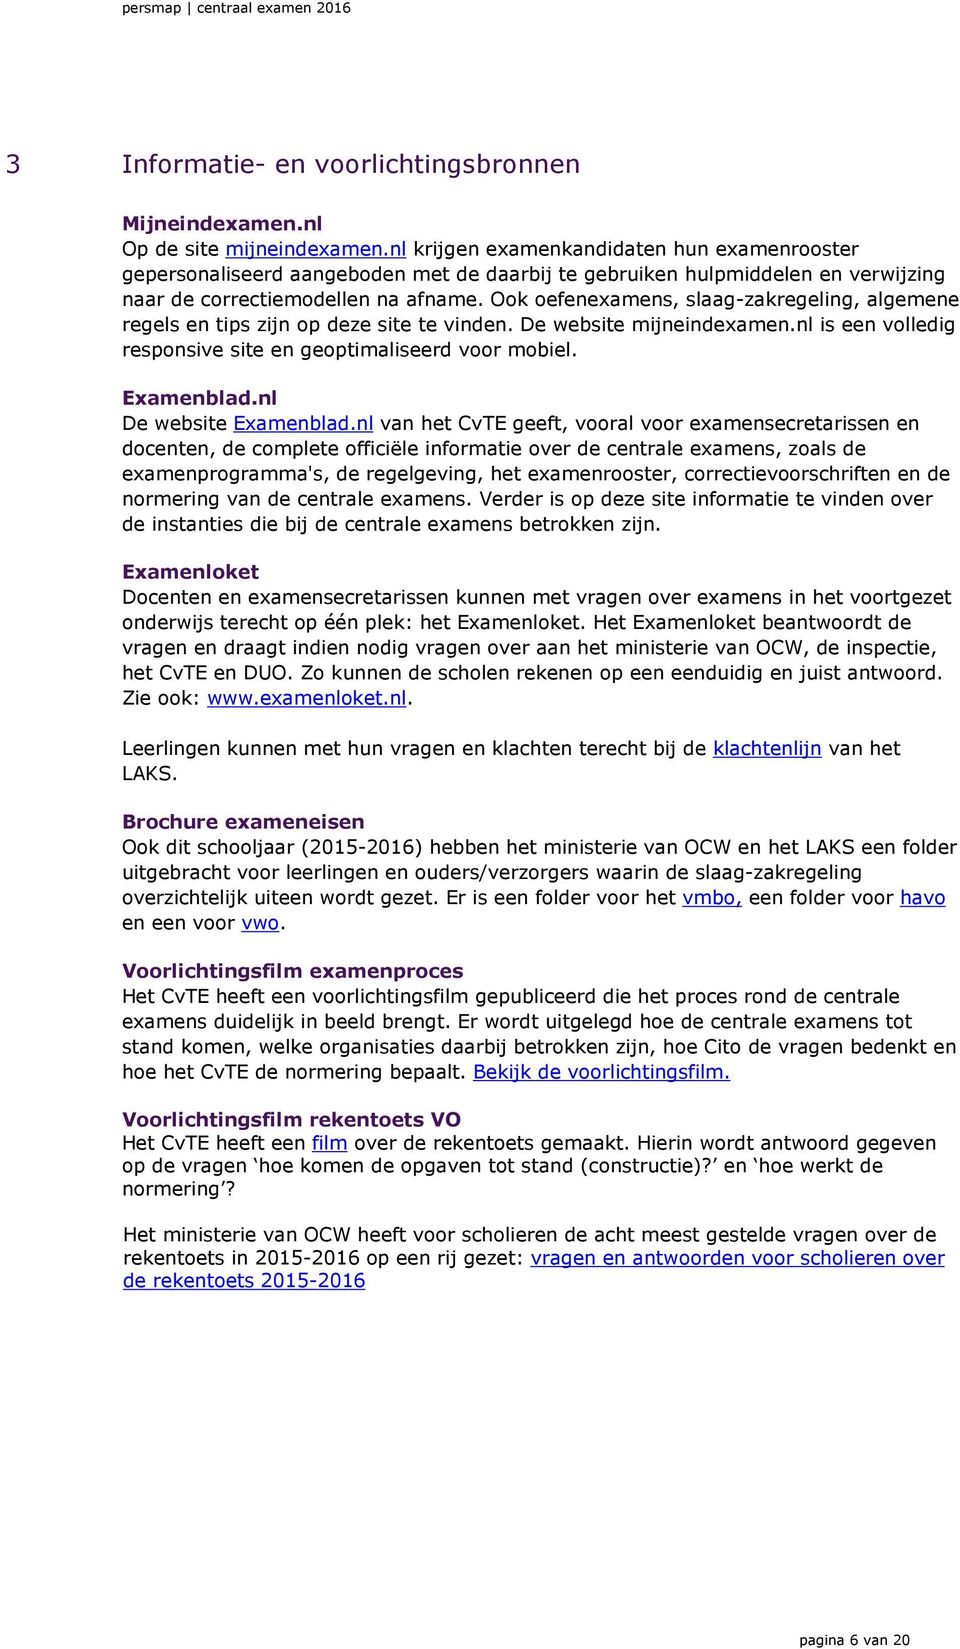 Ook oefenexamens, slaag-zakregeling, algemene regels en tips zijn op deze site te vinden. De website mijneindexamen.nl is een volledig responsive site en geoptimaliseerd voor mobiel. Examenblad.